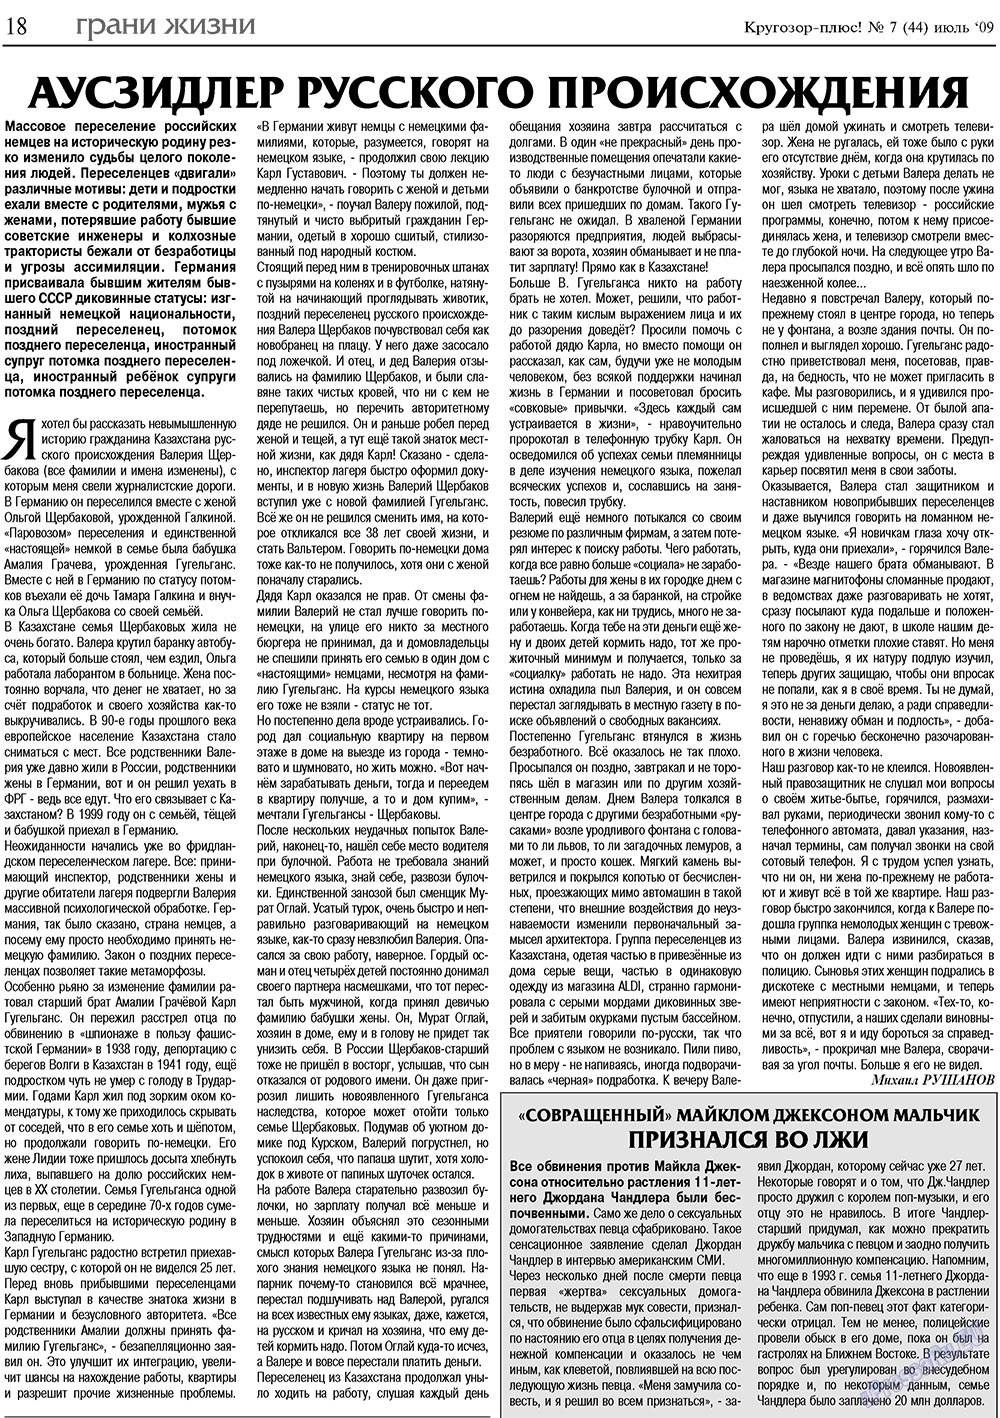 Кругозор плюс!, газета. 2009 №7 стр.18